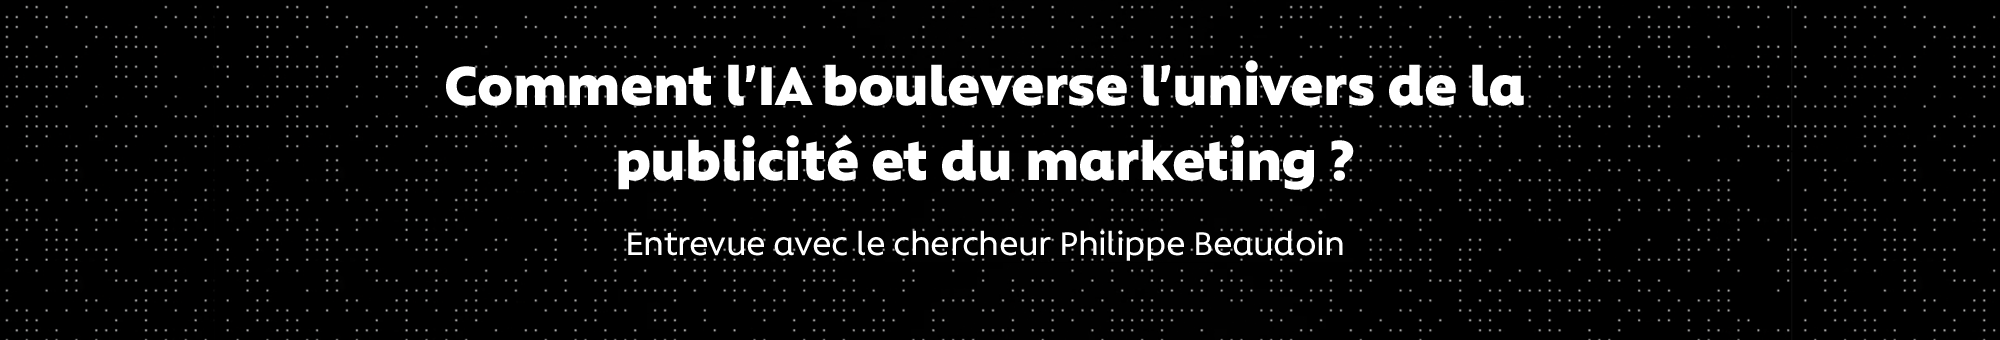 Comment l'IA bouleverse l'univers de la publicité et du marketing : entrevue avec le chercheur et entrepreneur Philippe Beaudoin